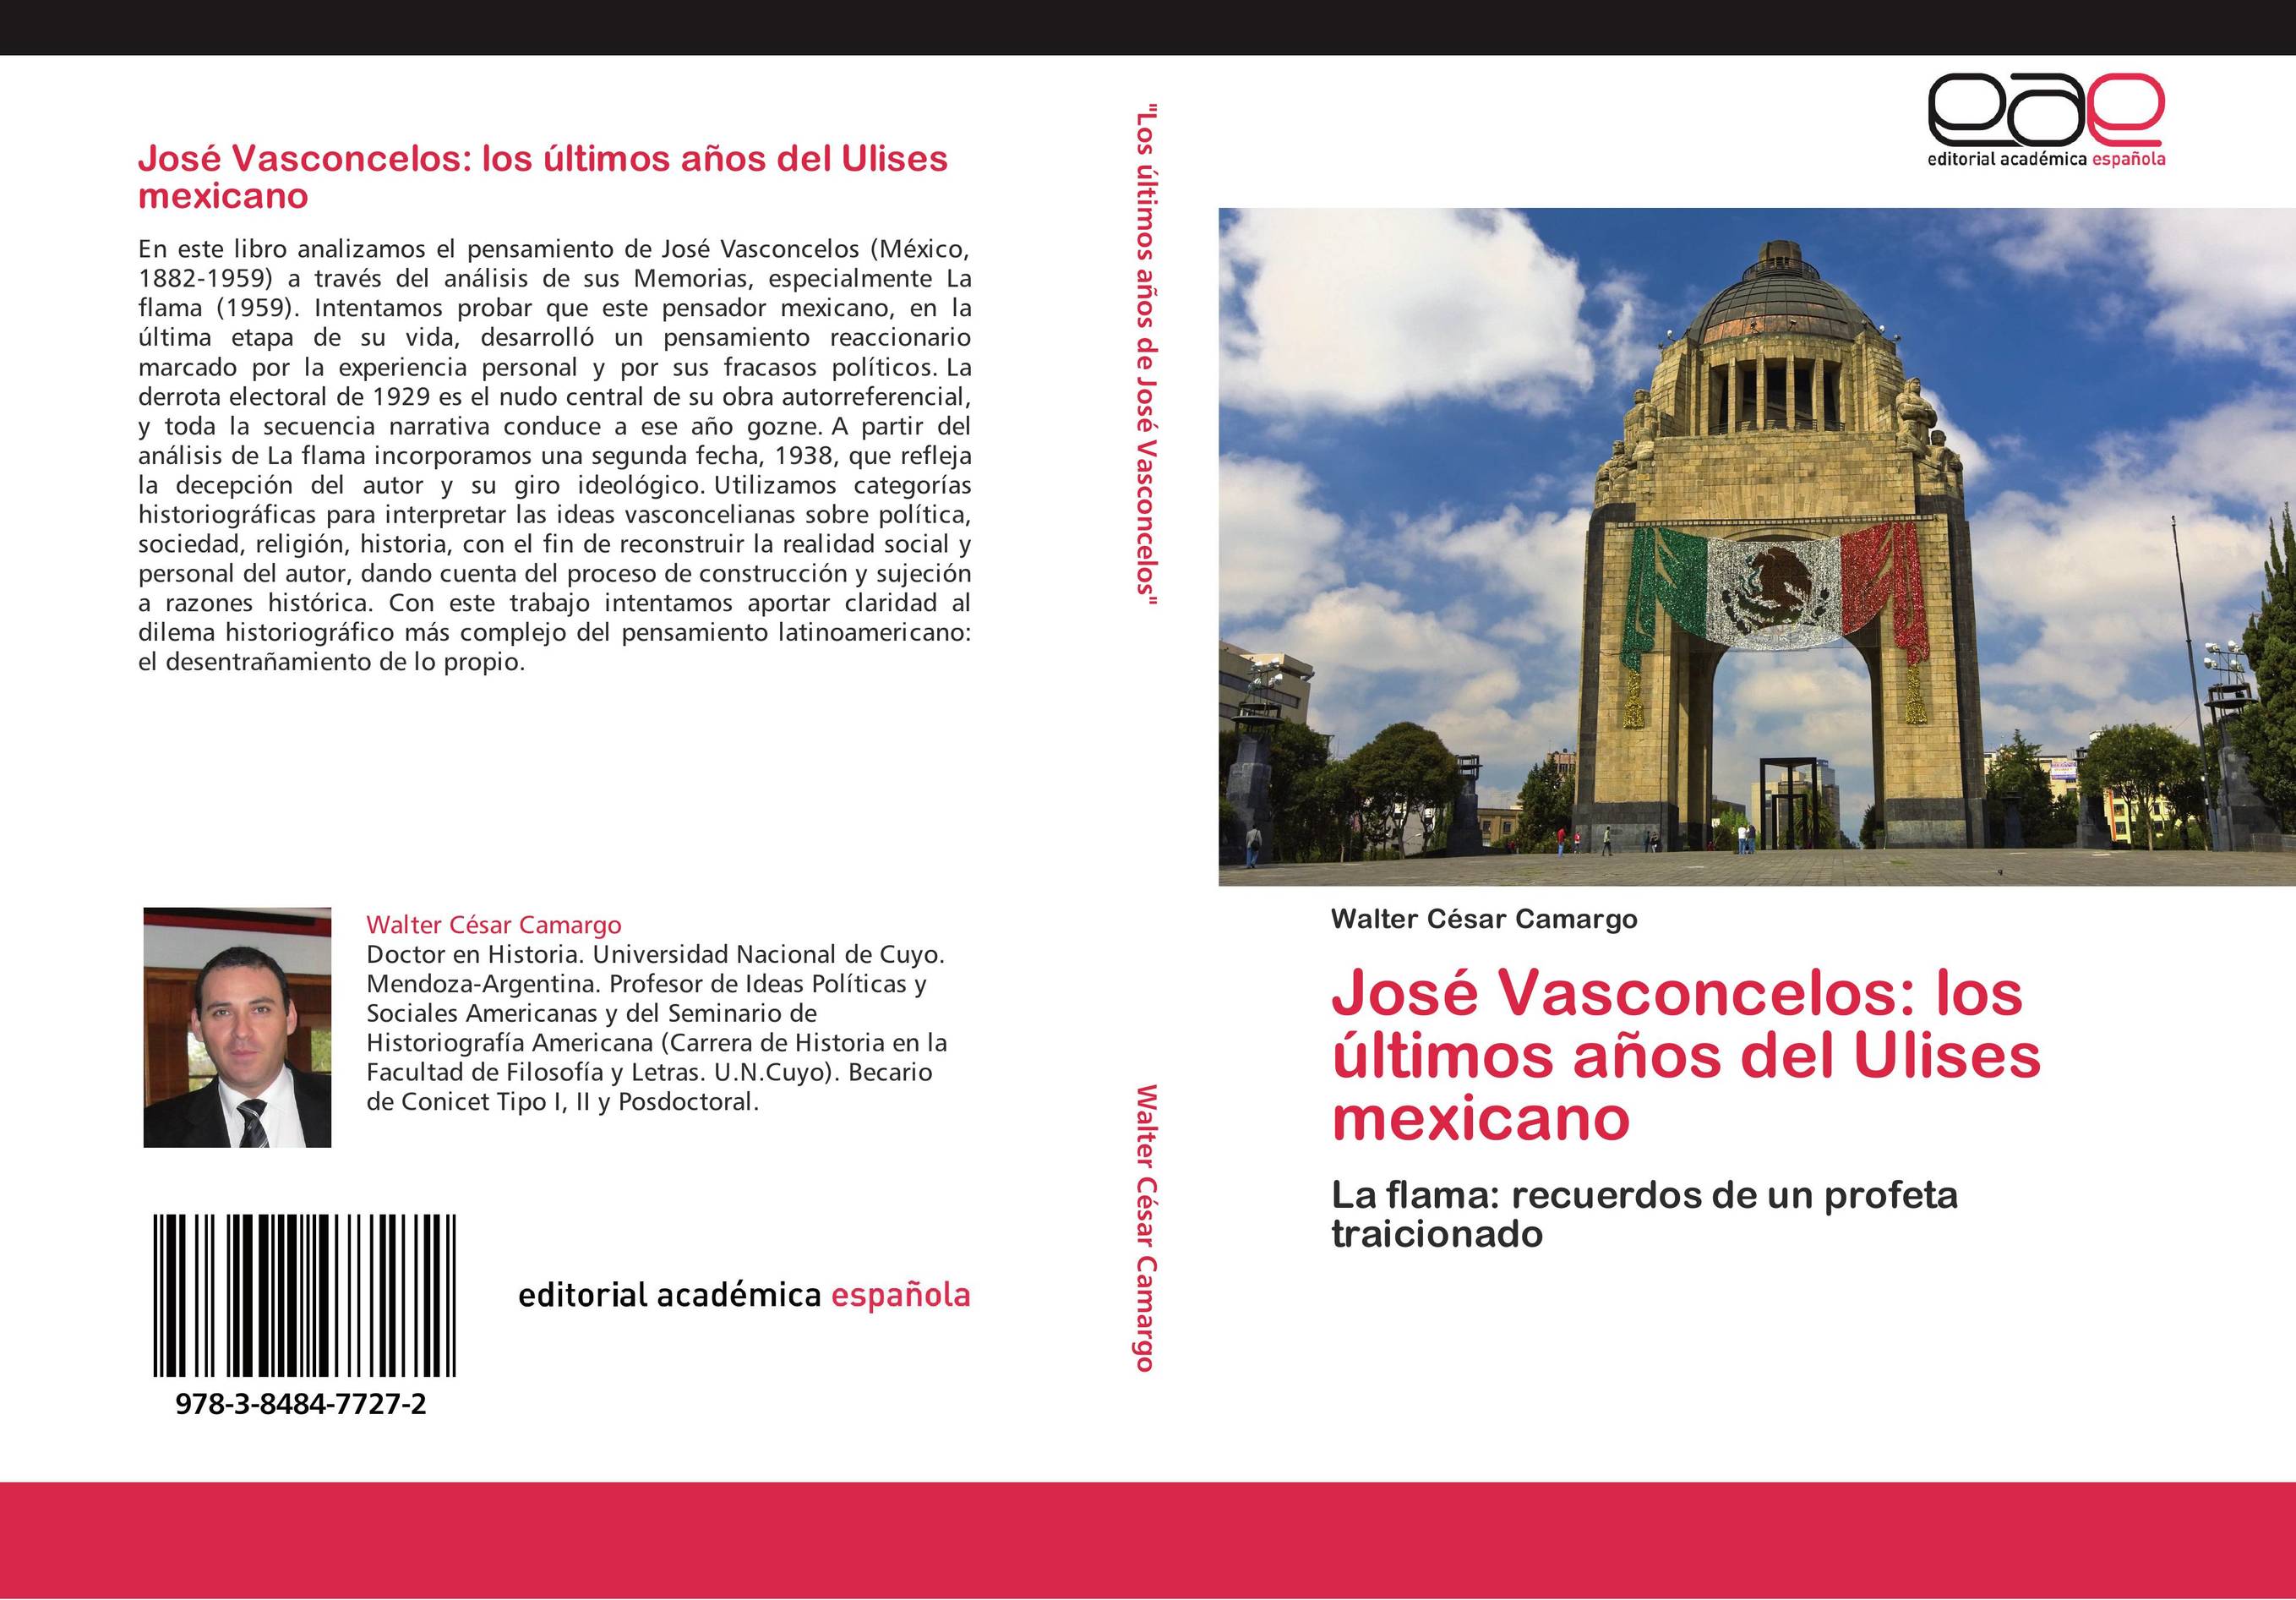 José Vasconcelos: los últimos años del Ulises mexicano